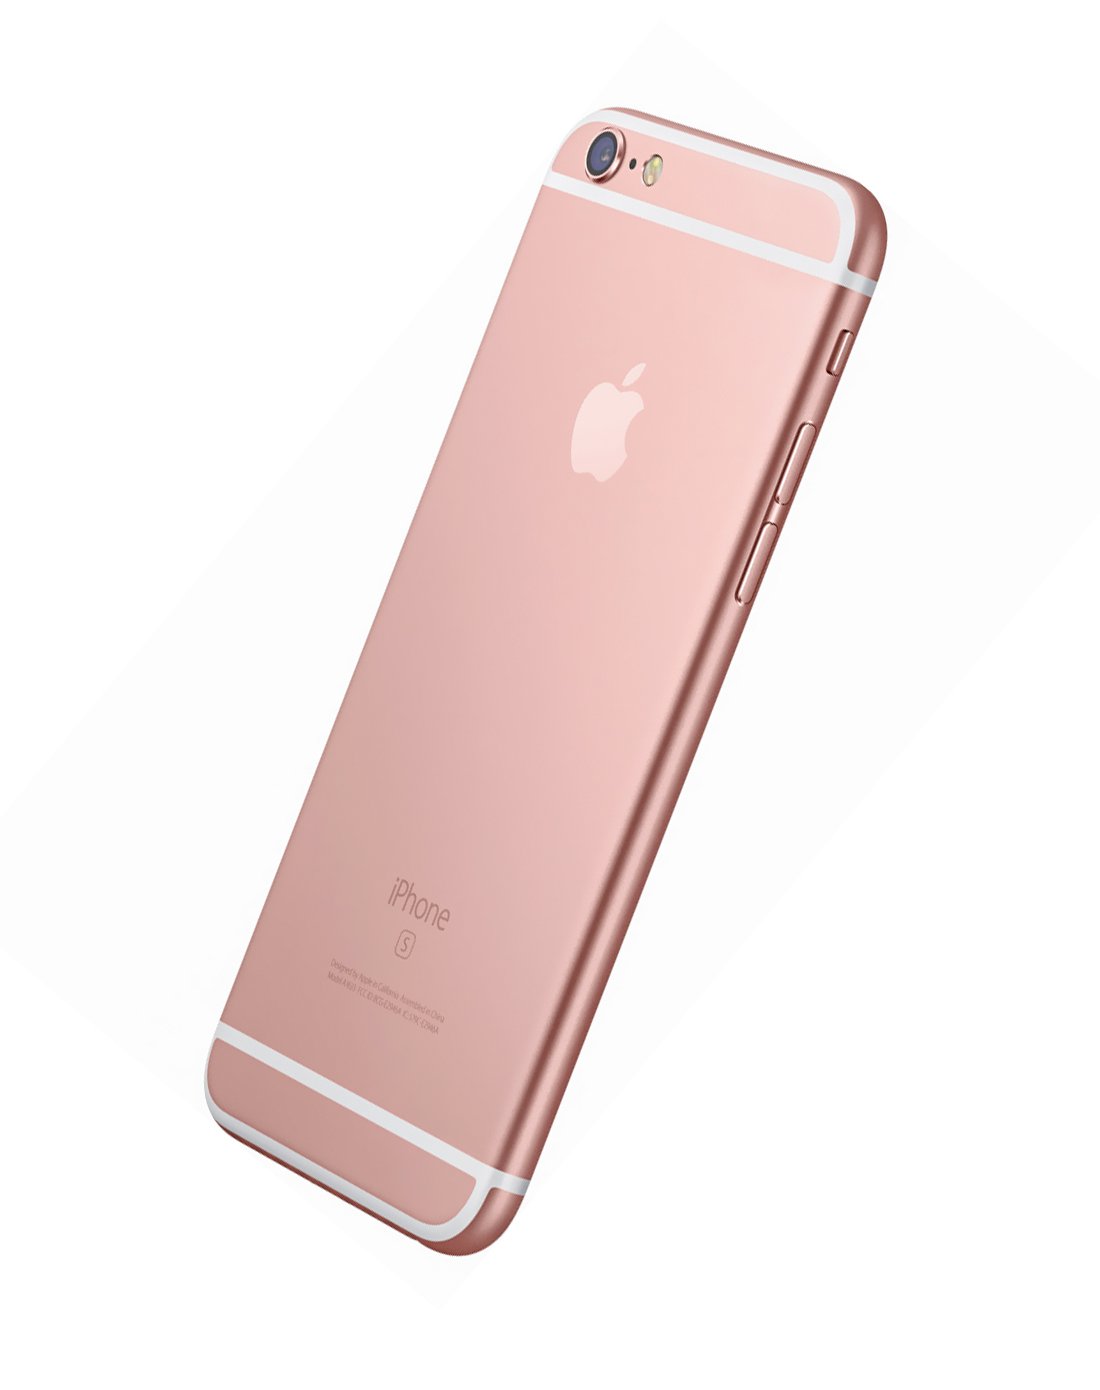 苹果iphone6s plus 玫瑰金色 32gb全网通 手机